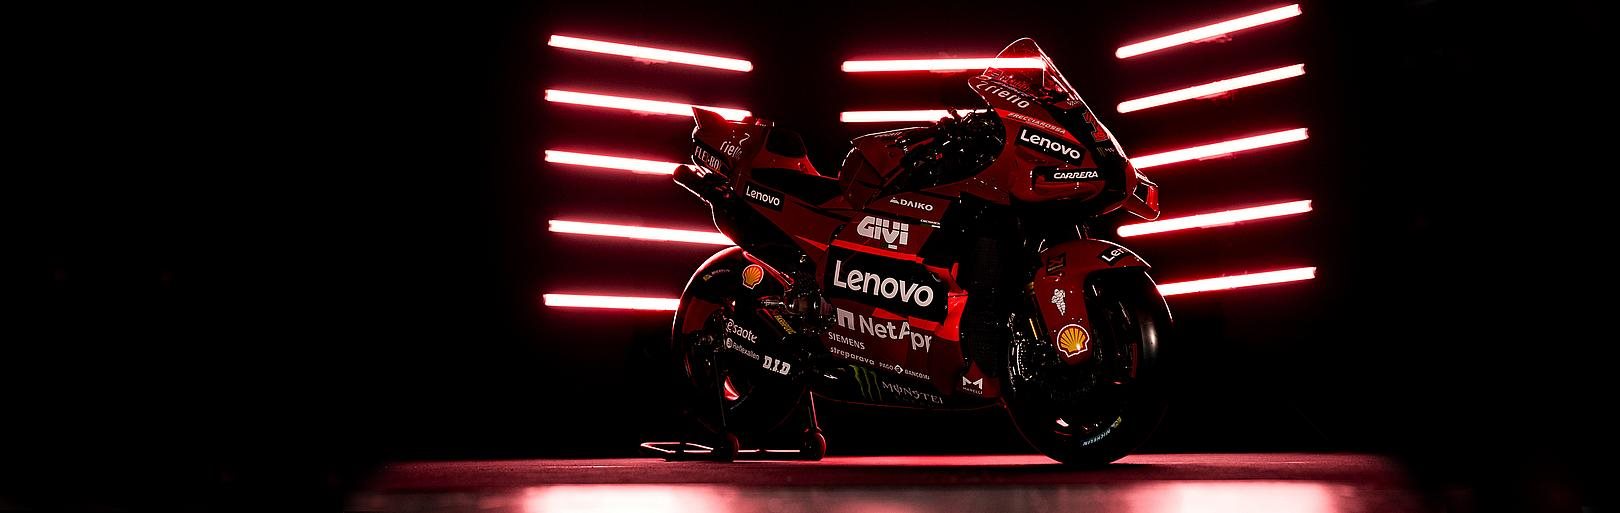 Ducati enthüllt offizielle MotoGP- und WorldSBK-Teamlackierungen in Madonna di Campiglio während des "Campioni in Pista"-Events.Das Ducati Lenovo Team…